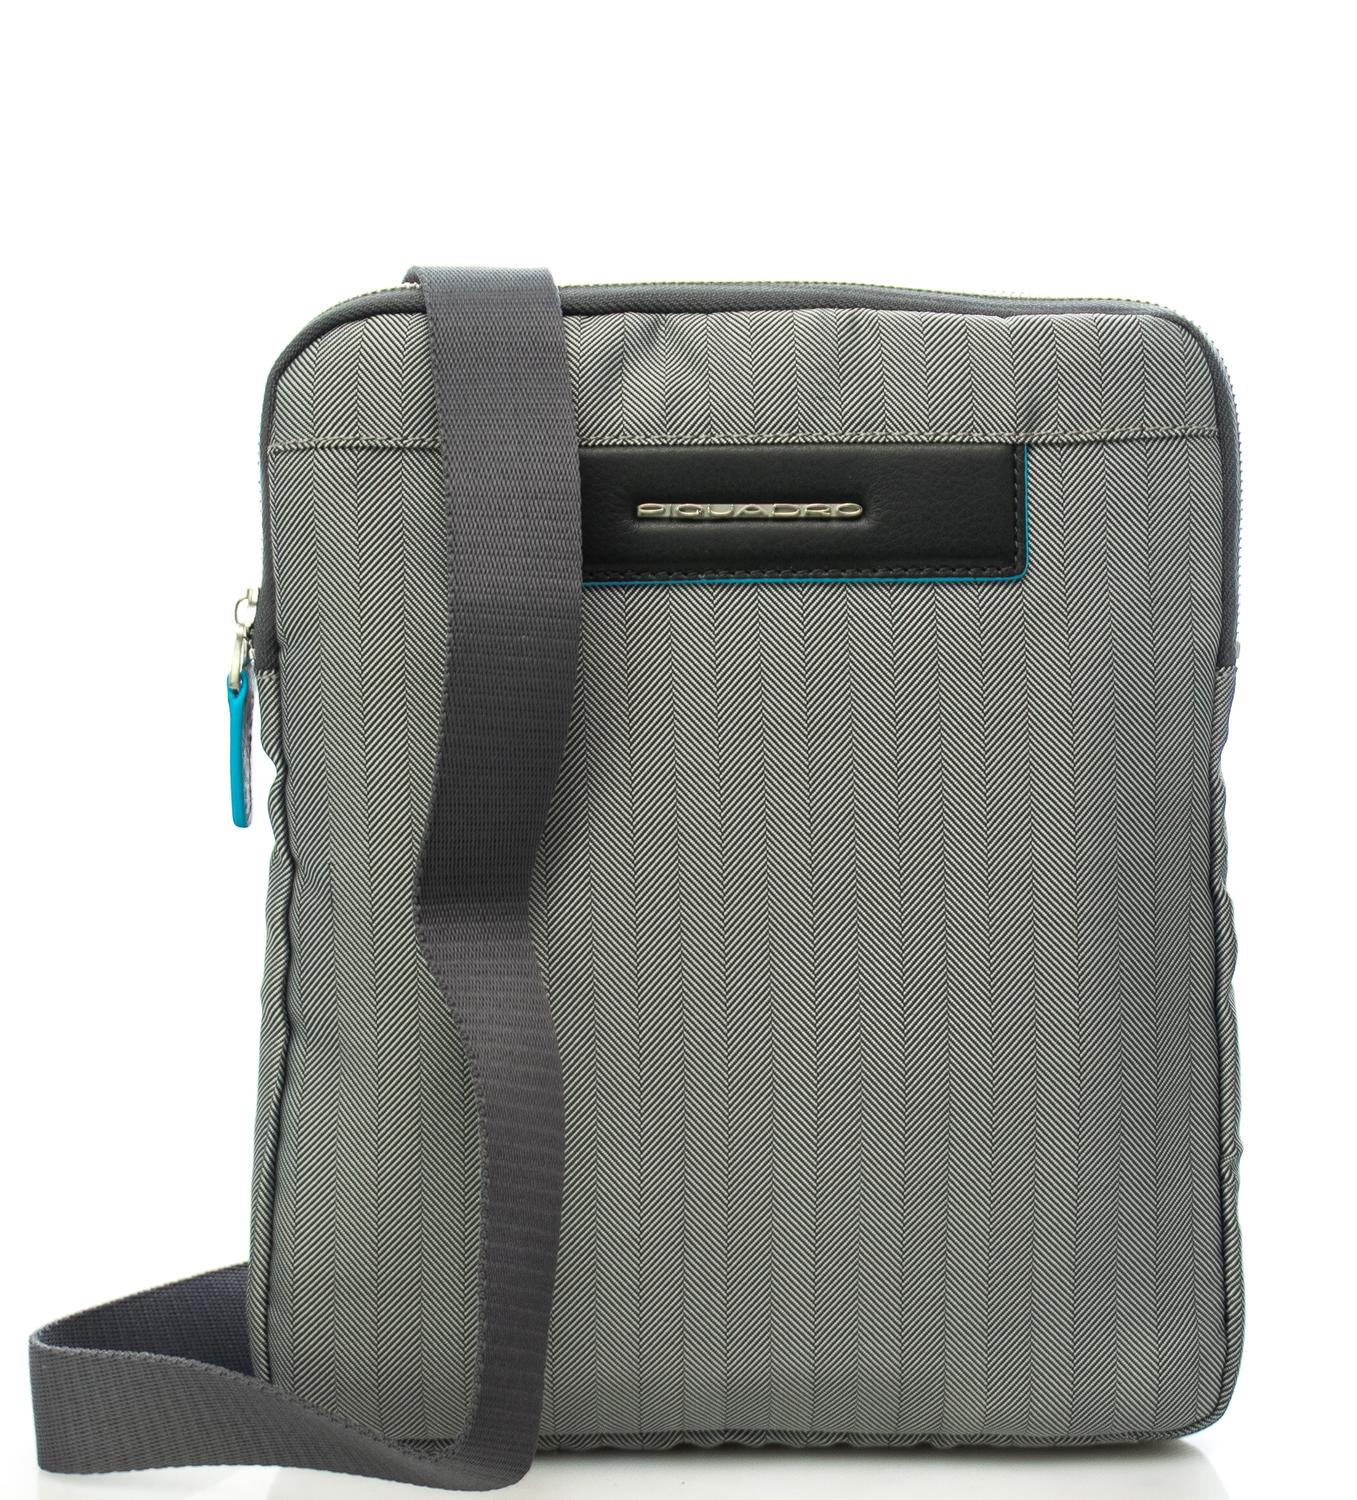 Piquadro Bags & Wallets | Sydney Luggage | Sydney Luggage